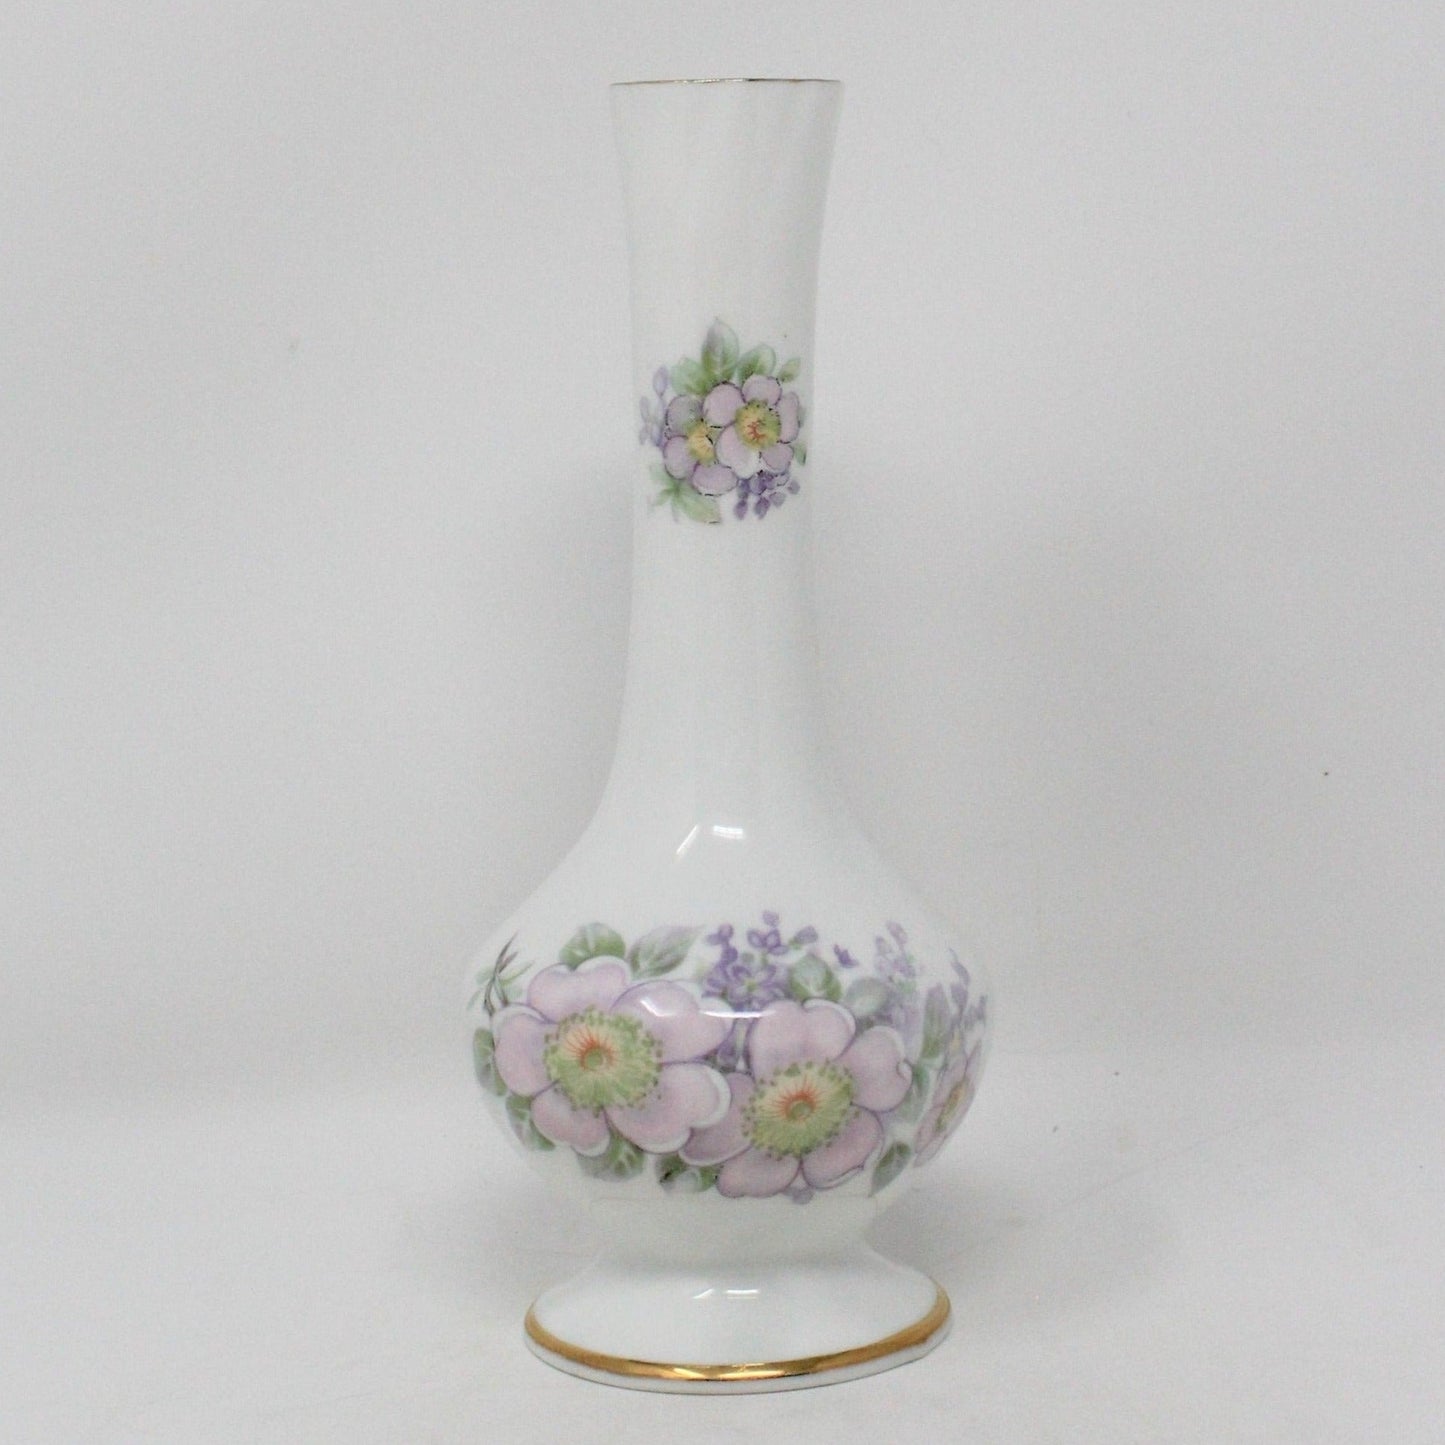 Bud Vase, Royal Tara, Irish Blossom, Bone China, Vintage